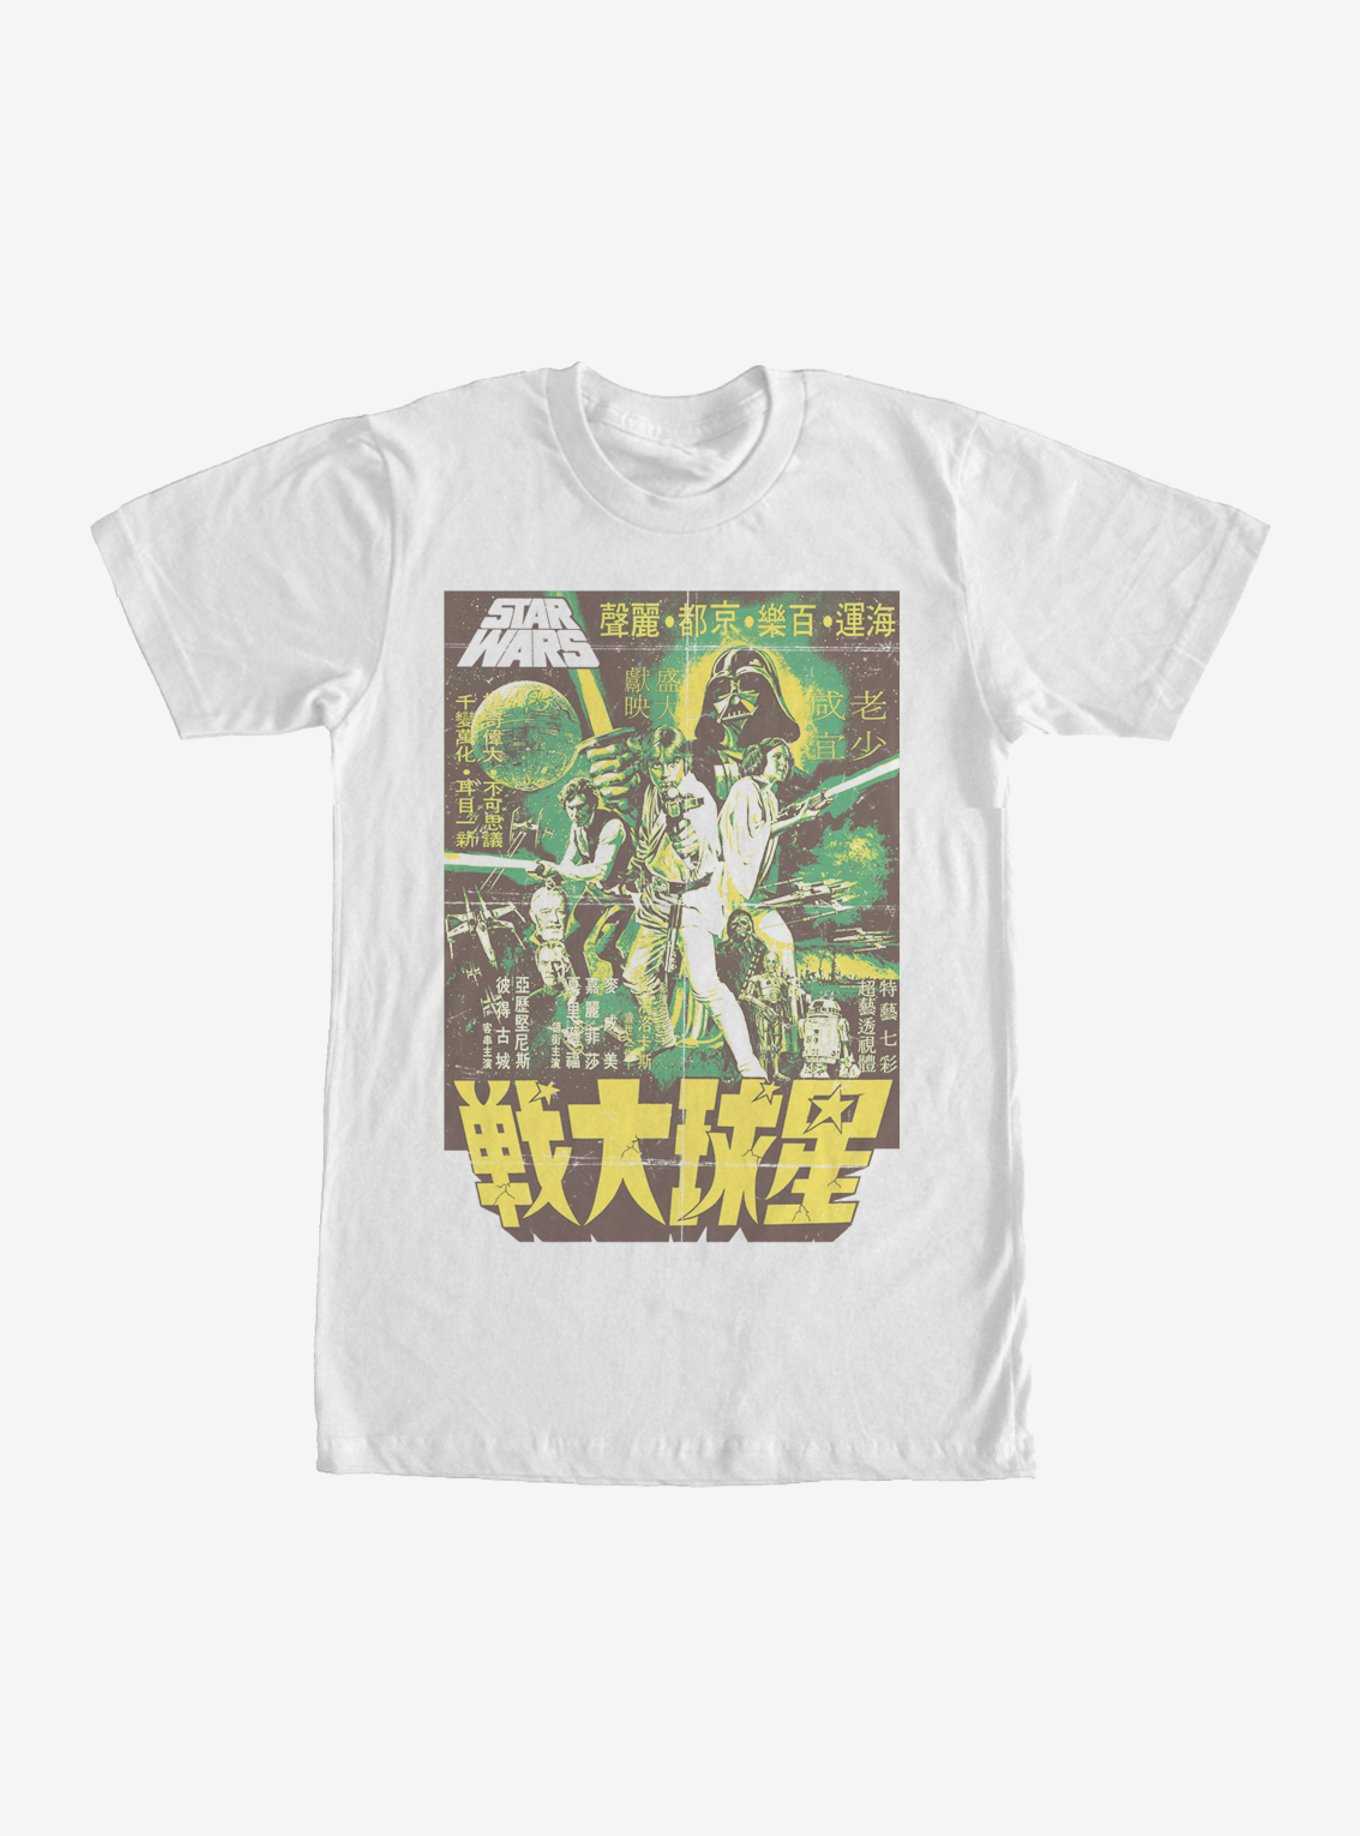 Star Wars Episode IV A New Hope Hong Kong Poster T-Shirt, , hi-res